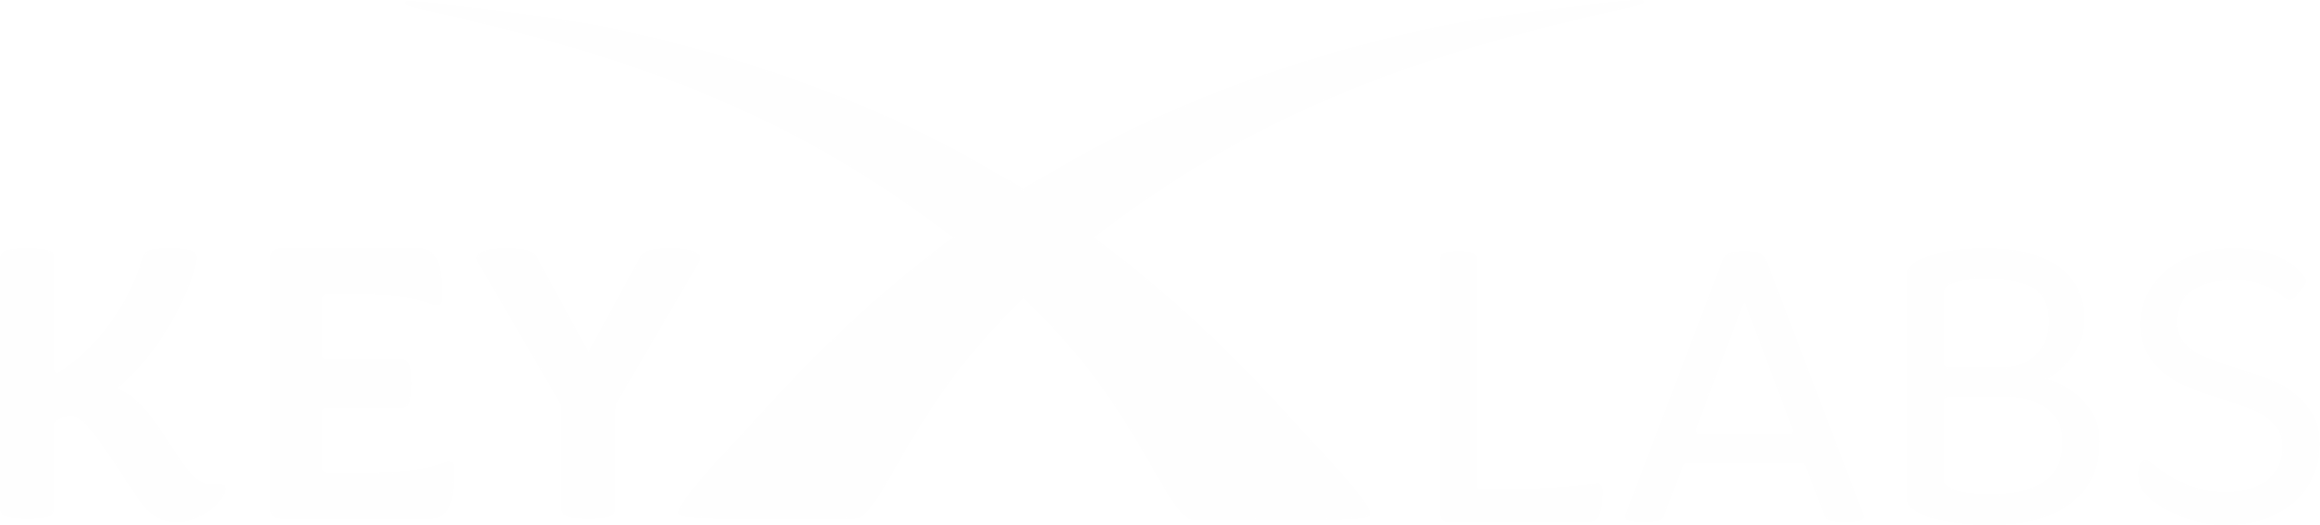 KeyX Labs